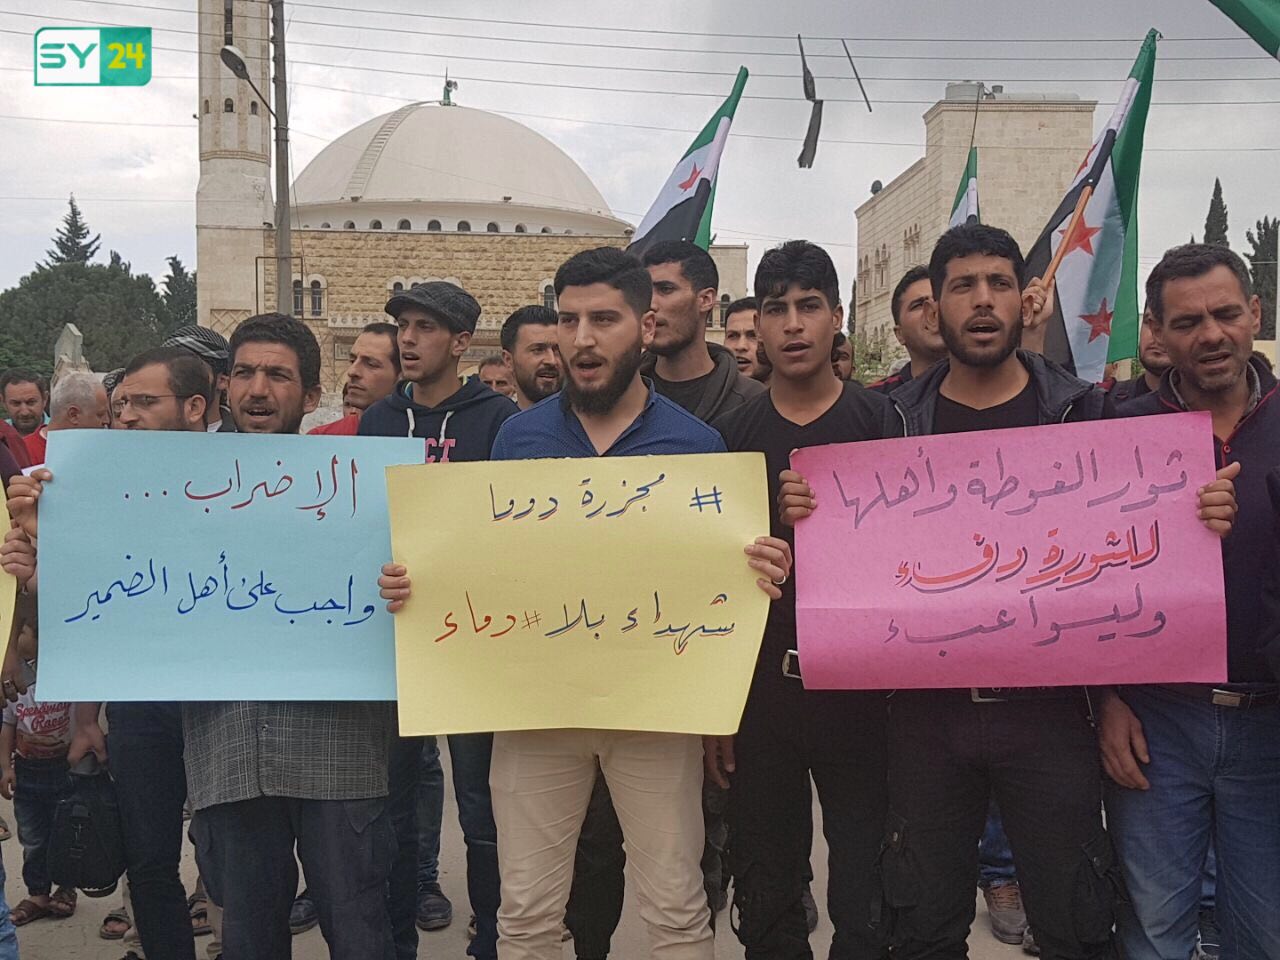 وقفة احتجاجية في مدينة إعزاز للتنديد بجريمة النظام في دوما